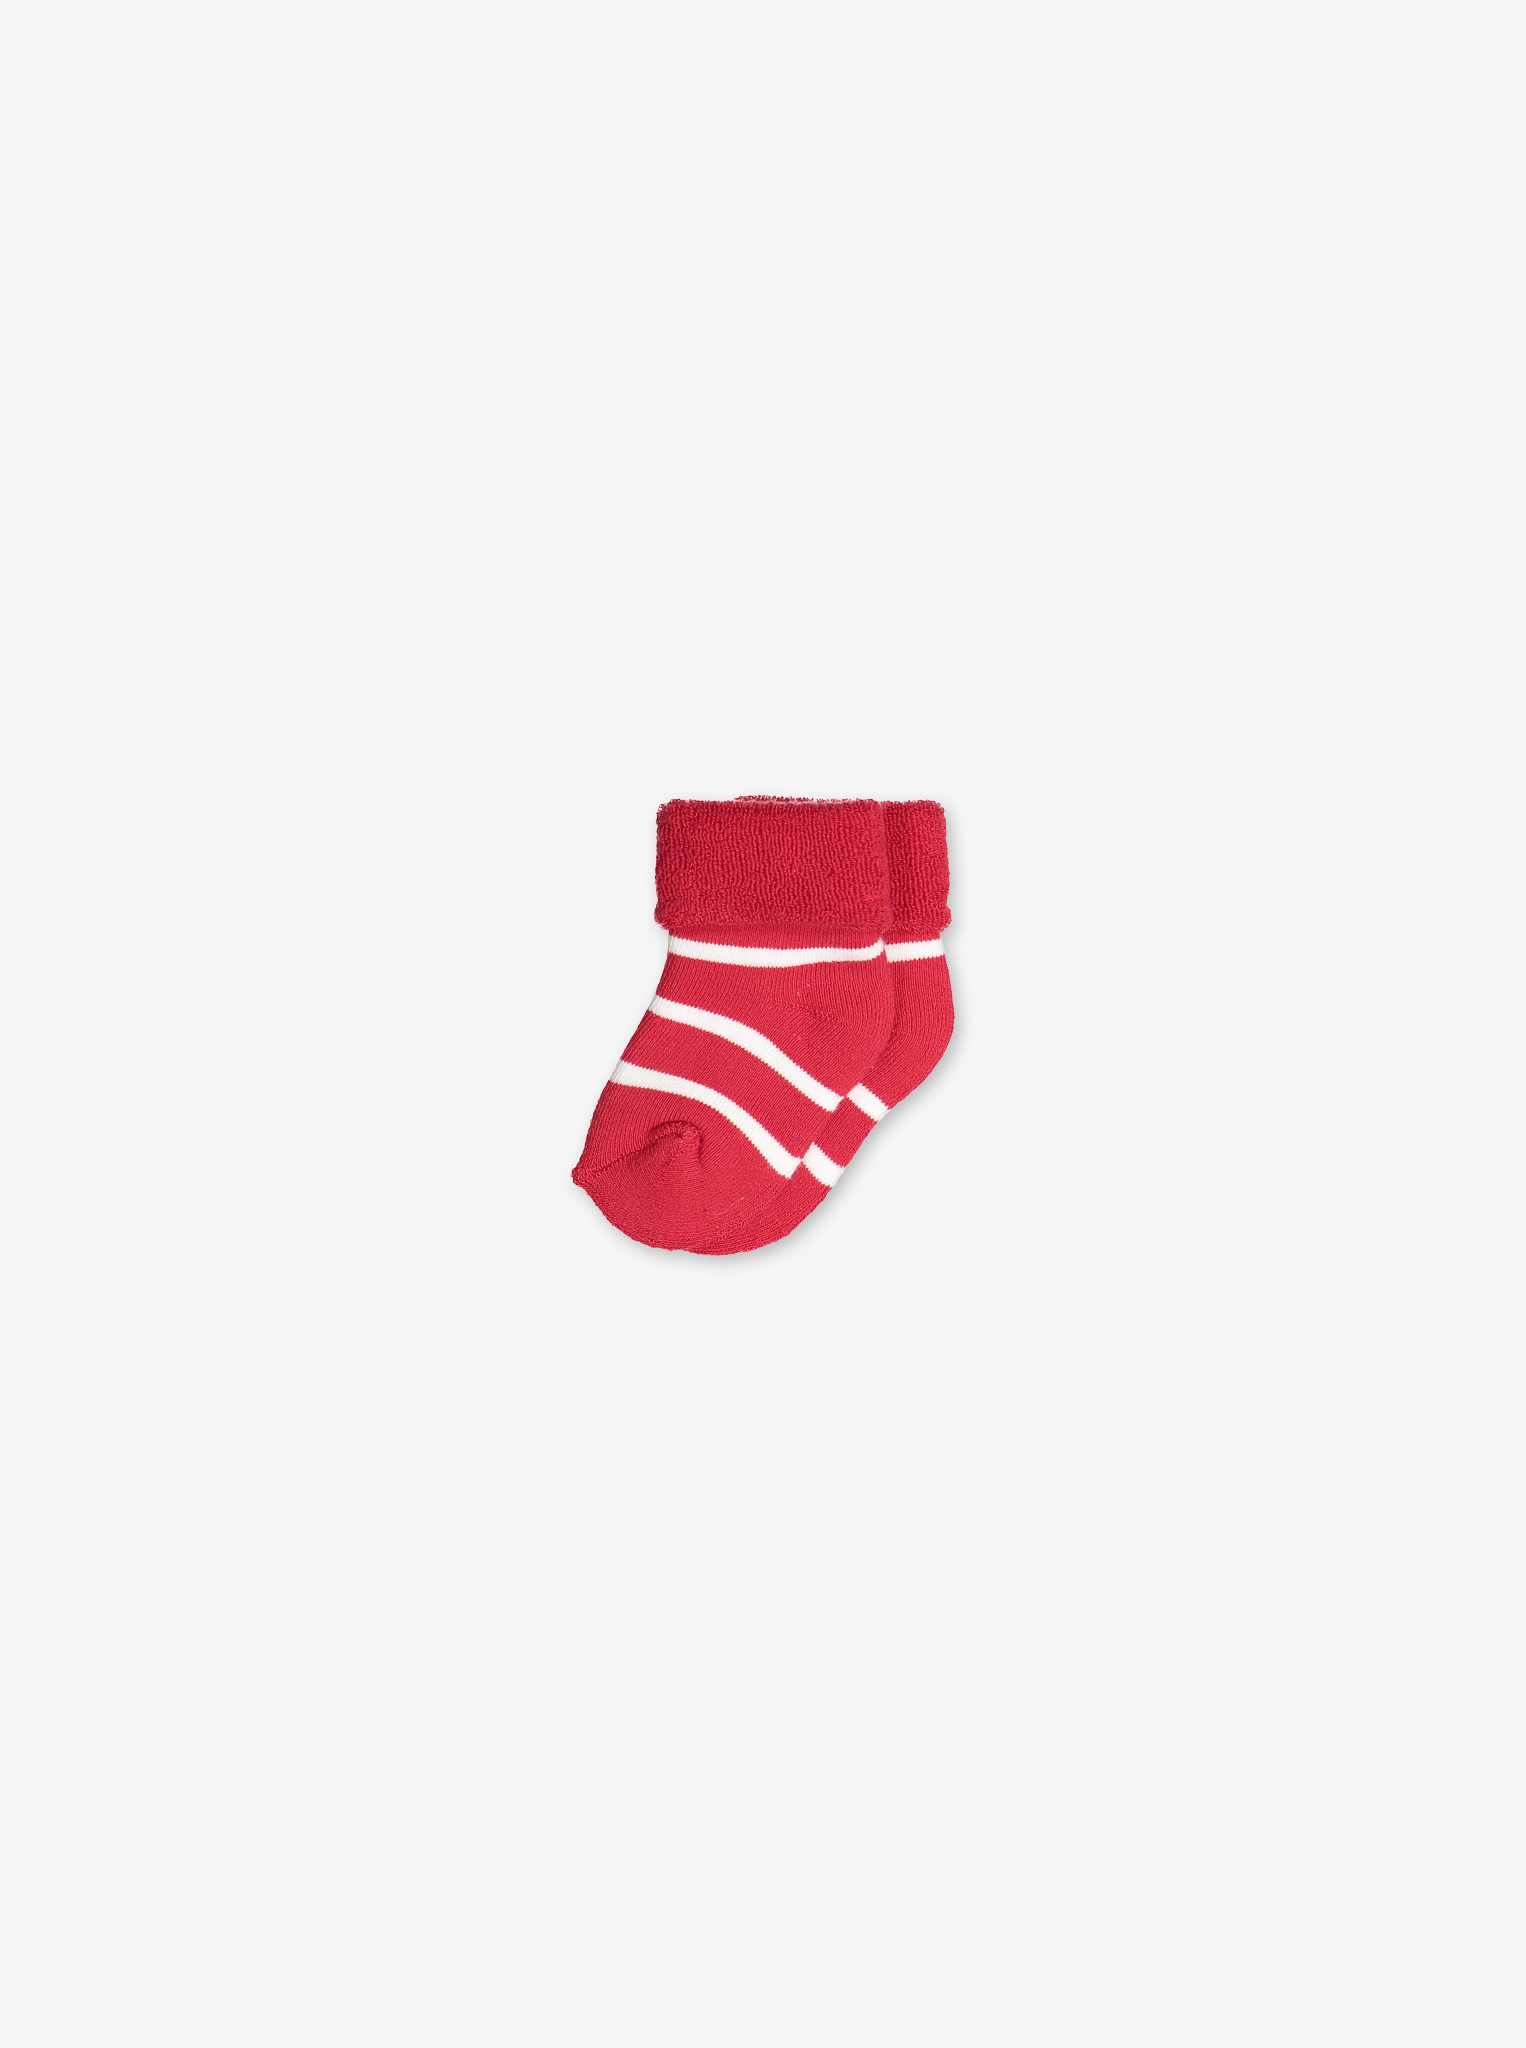 PO.P classic antislip newborn baby socks in red and white